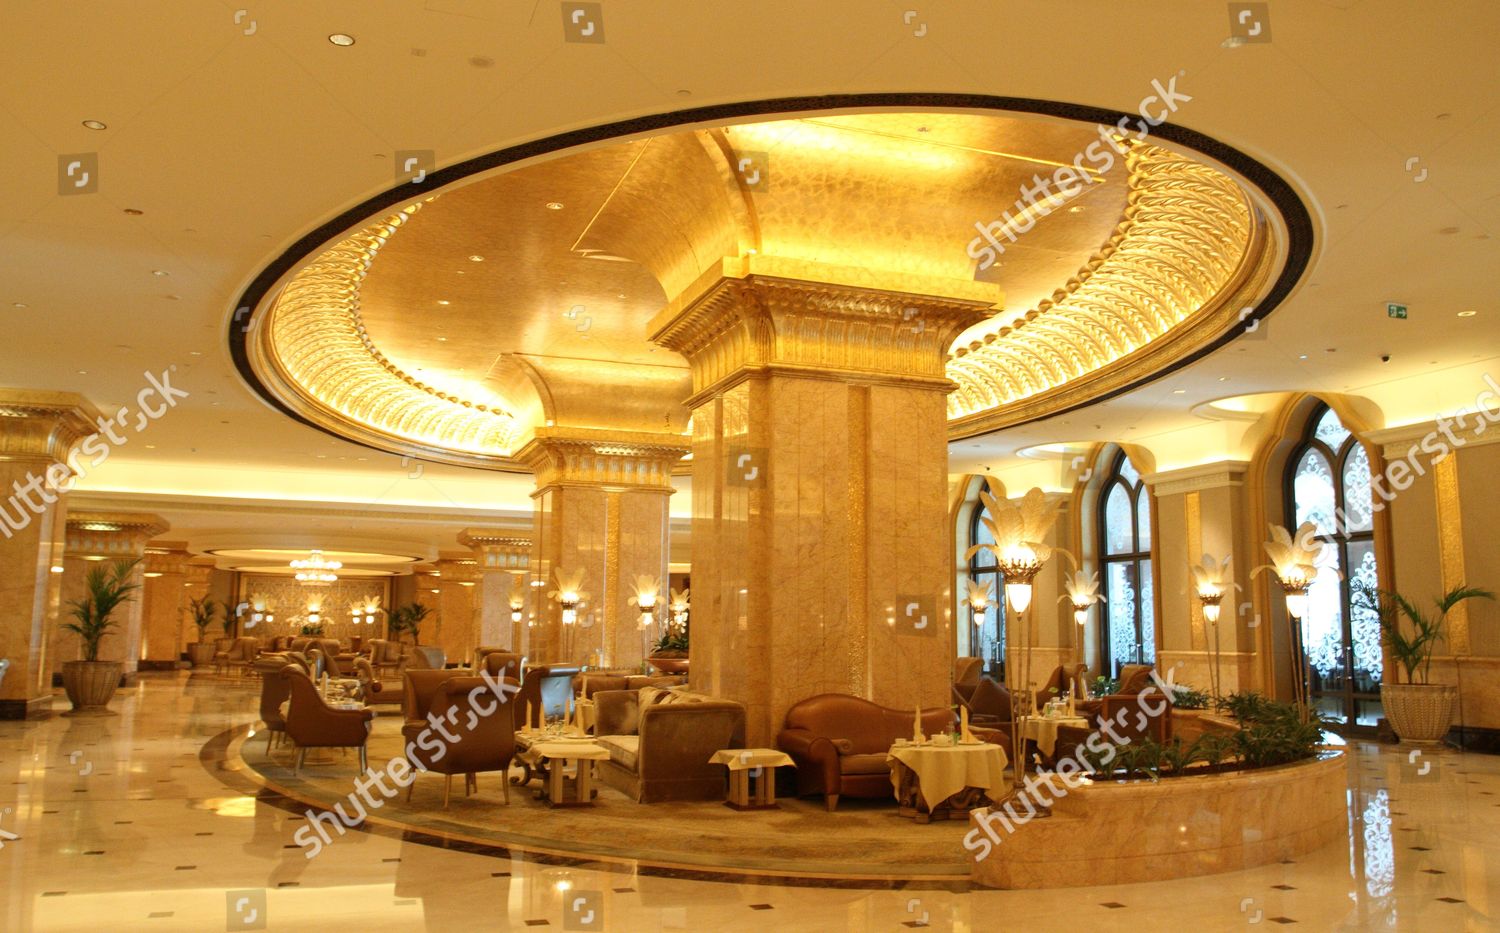 Emirates Palace Luxury Hotel Abu Dhabi United Redaktionelles